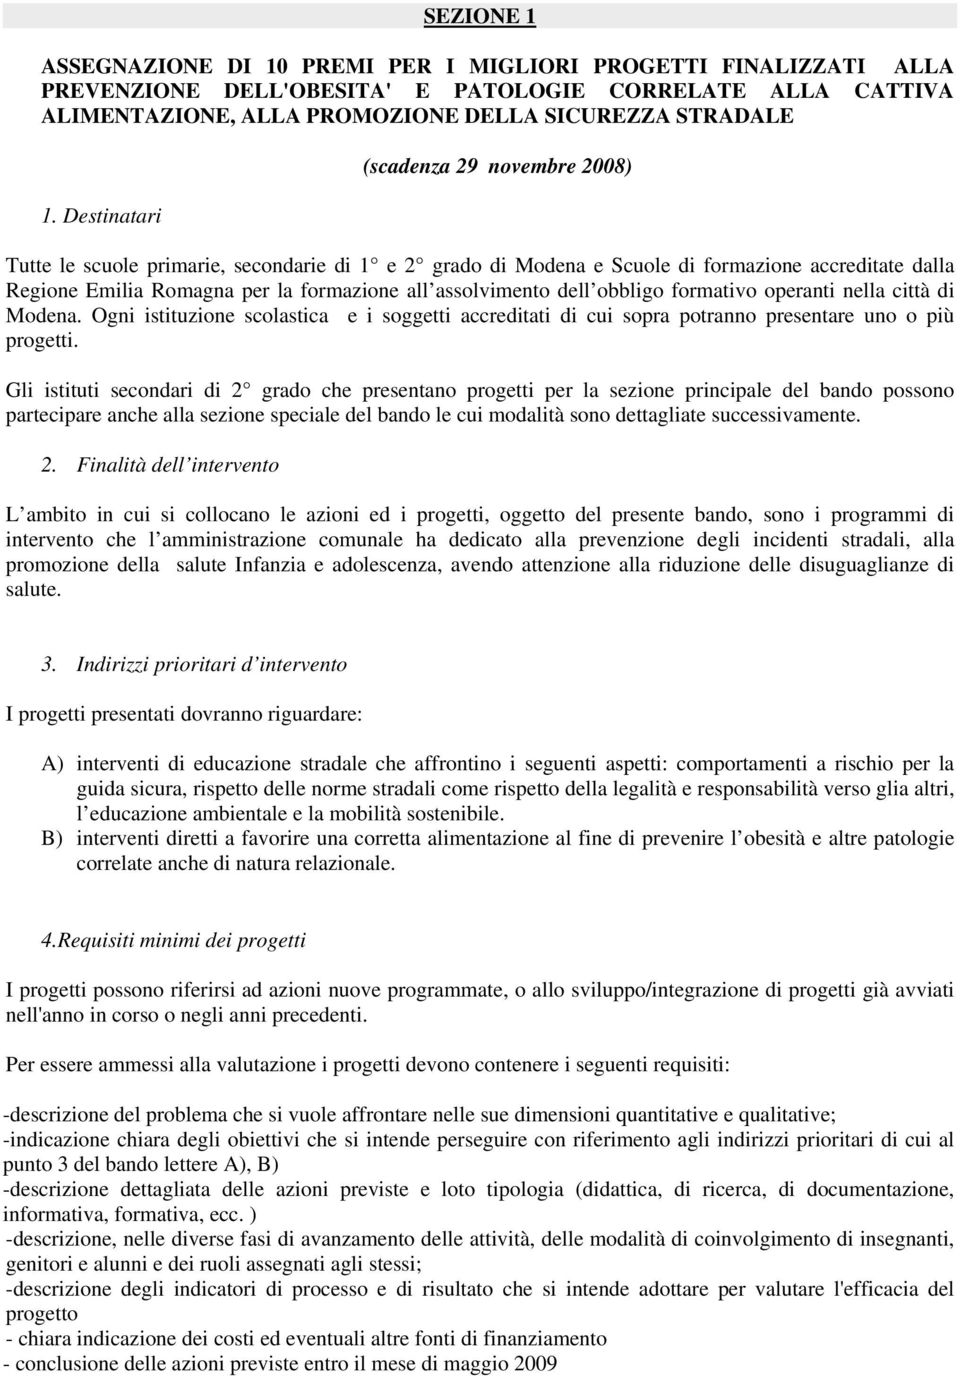 assolvimento dell obbligo formativo operanti nella città di Modena. Ogni istituzione scolastica e i soggetti accreditati di cui sopra potranno presentare uno o più progetti.